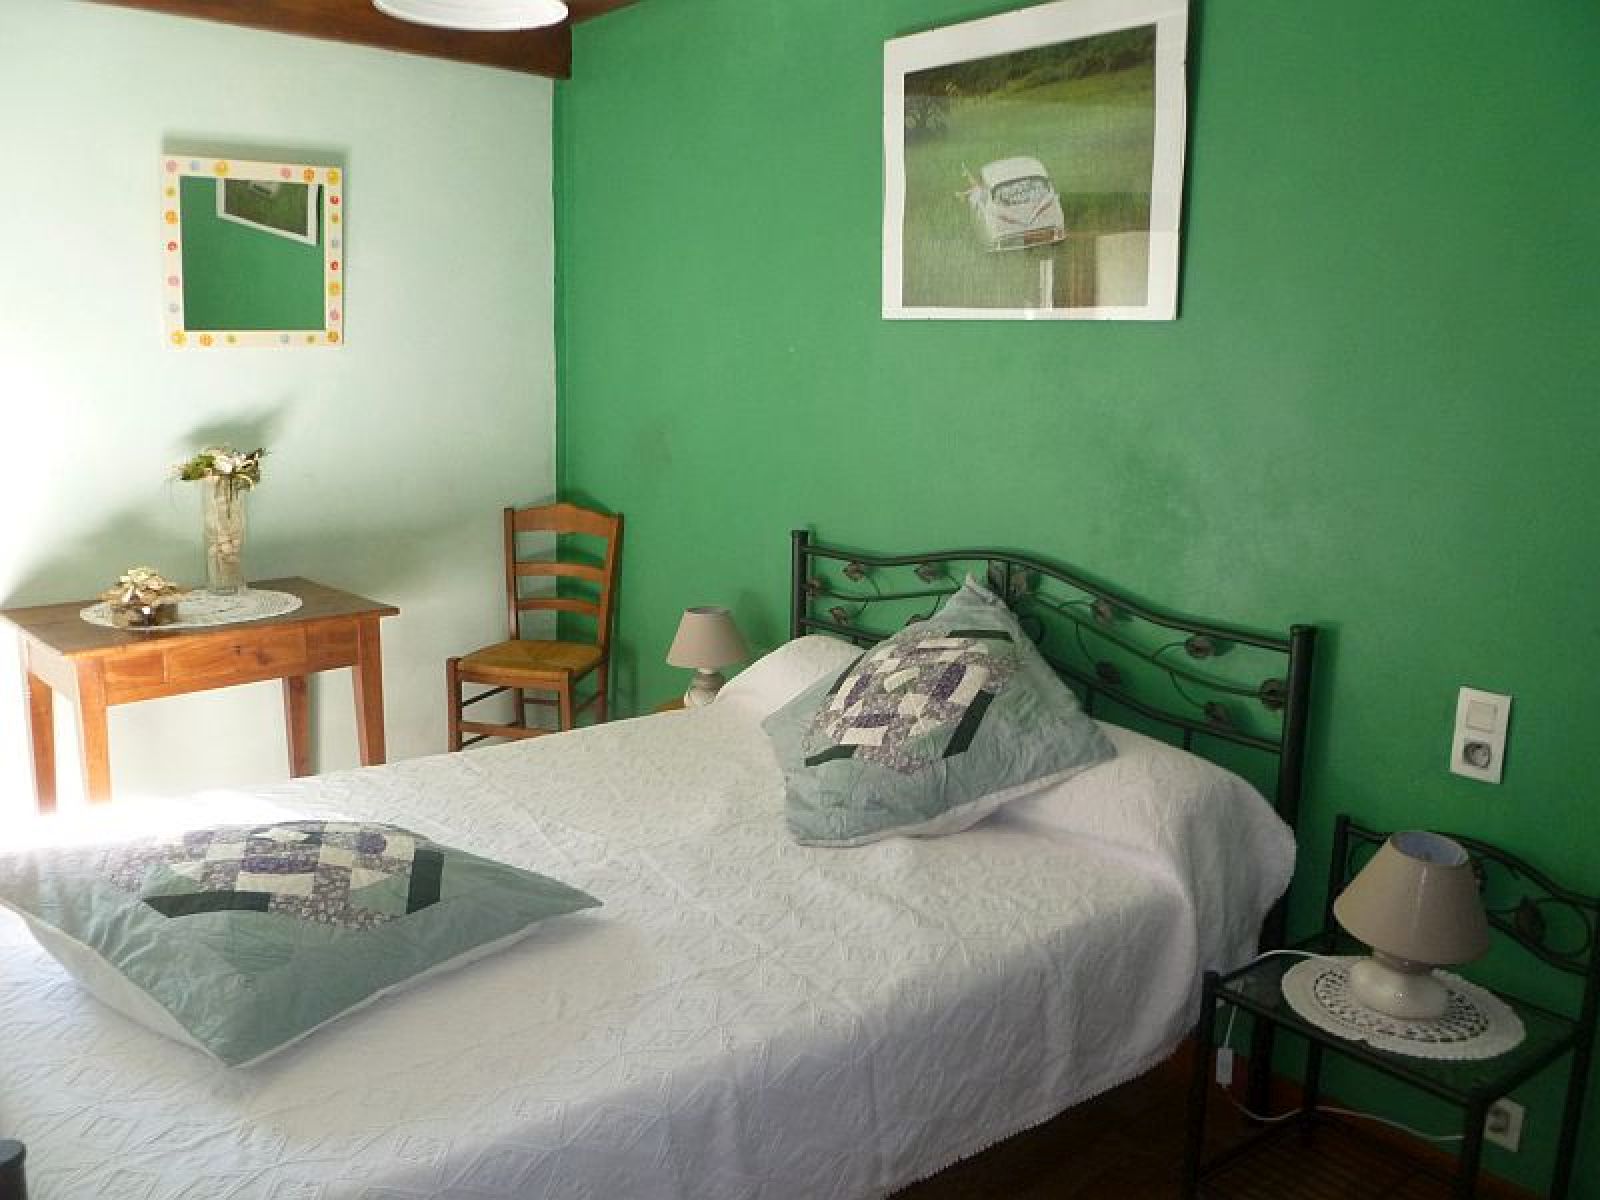 Maison Cherbero arriere chambre lit double verte - St Etienne de Baigorry 